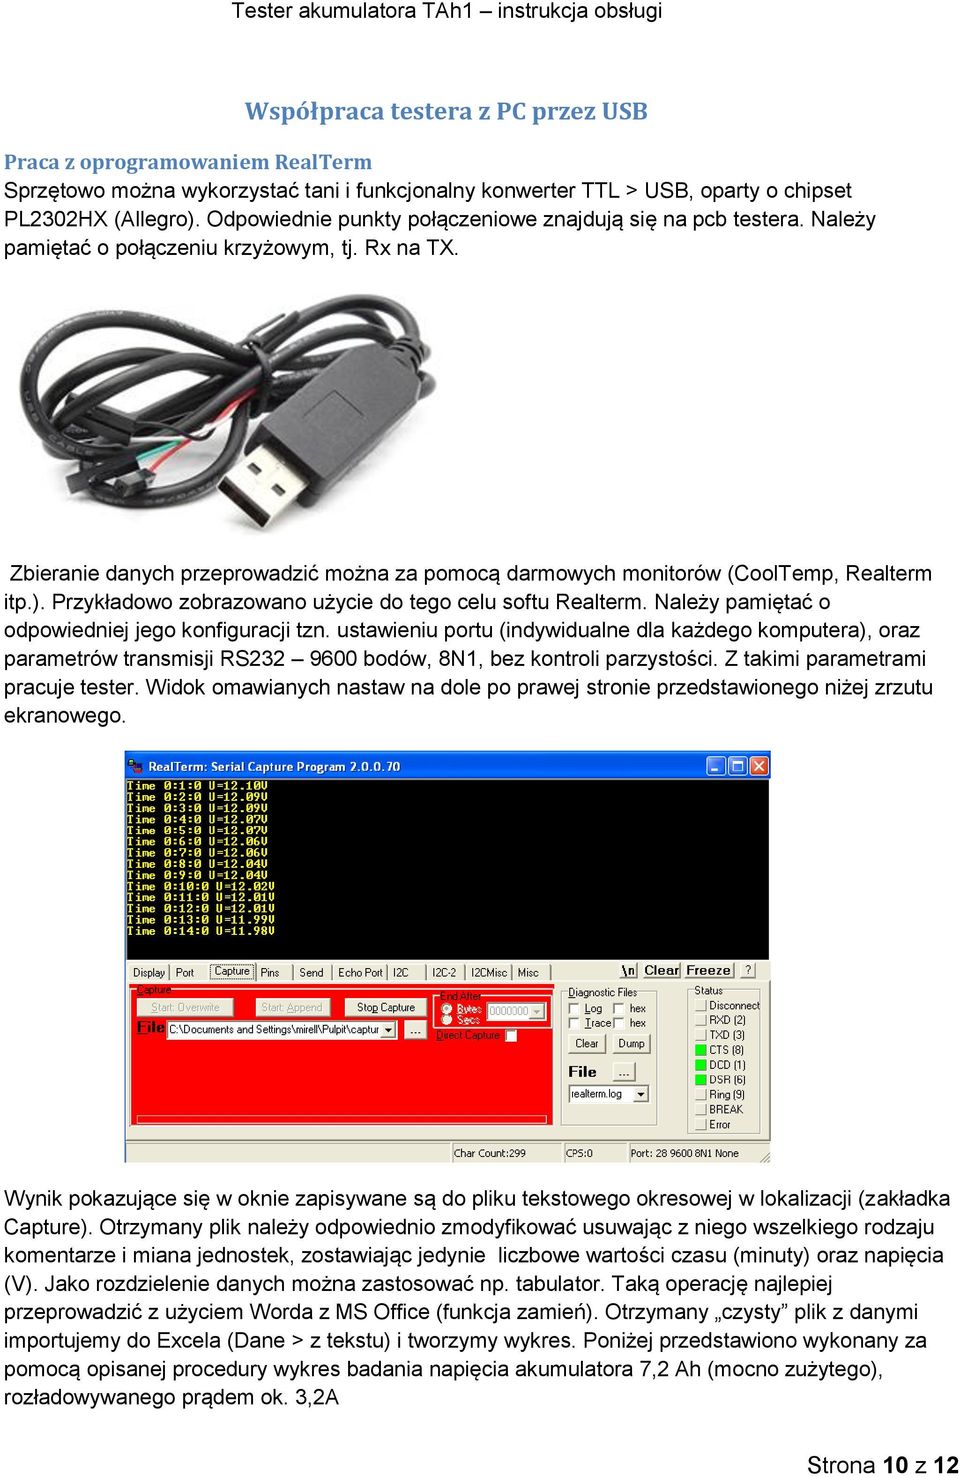 Zbieranie danych przeprowadzić można za pomocą darmowych monitorów (CoolTemp, Realterm itp.). Przykładowo zobrazowano użycie do tego celu softu Realterm.